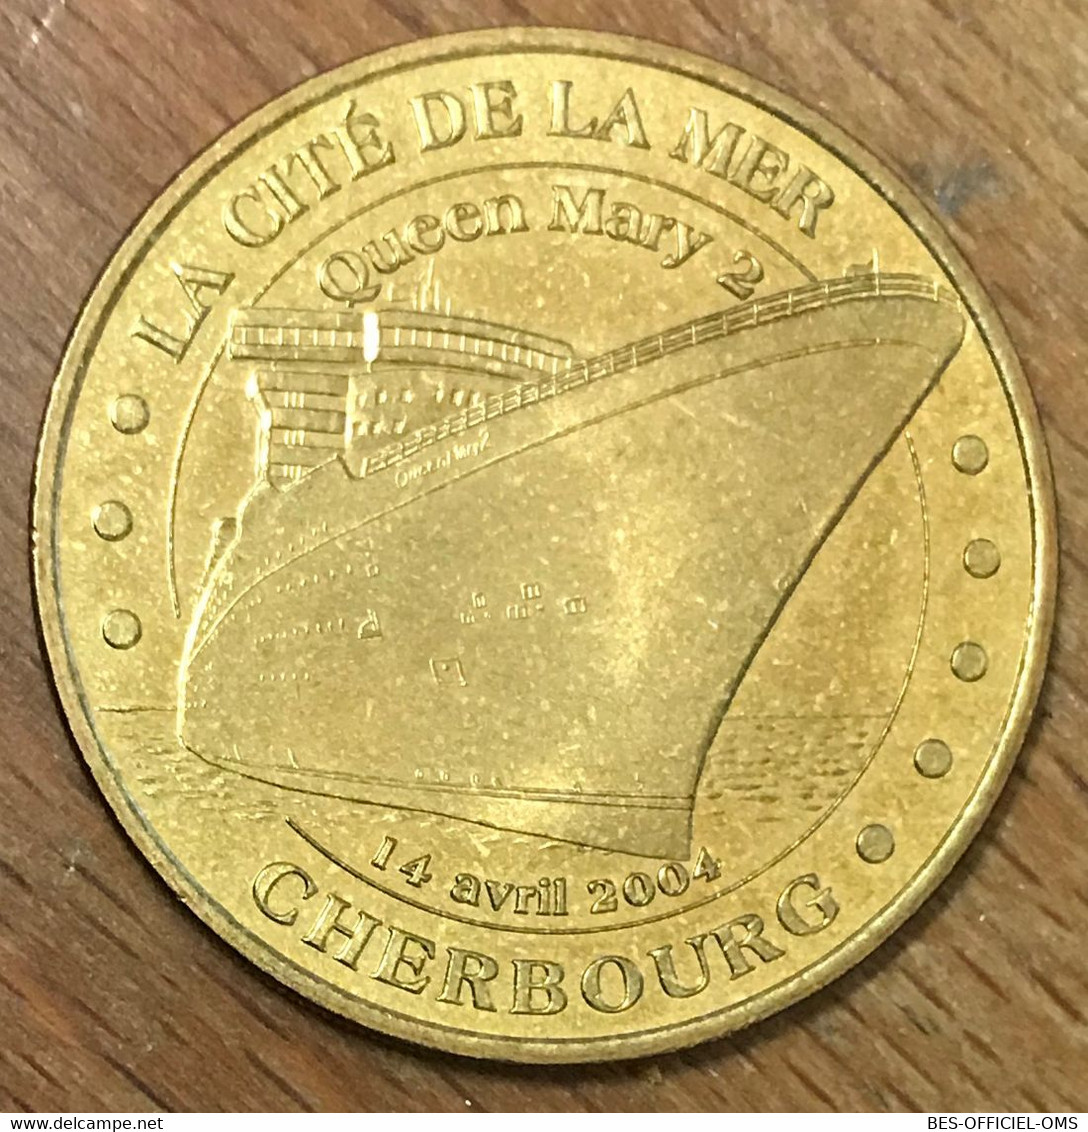 50 CHERBOURG CITÉ DE LA MER QUEEN MARY MDP 2004 MÉDAILLE SOUVENIR MONNAIE DE PARIS JETON TOURISTIQUE MEDALS COINS TOKENS - 2004